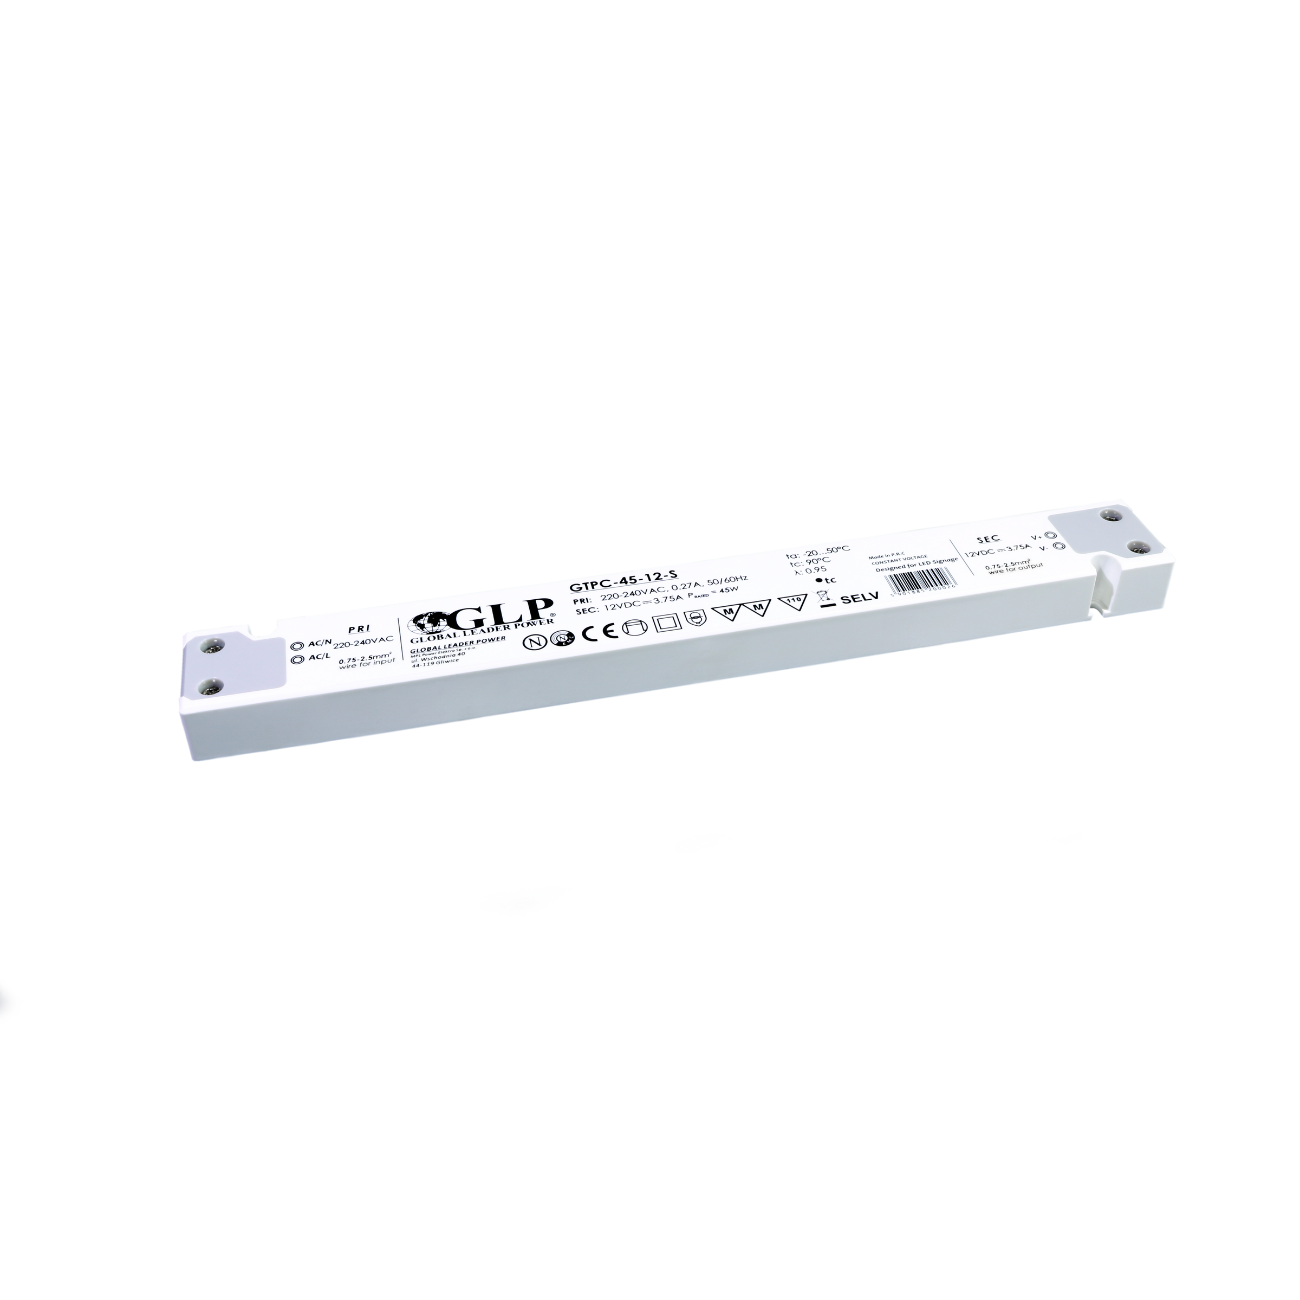 GTPC-45-24-S (45W/24V) LED-Netzteil (slim)